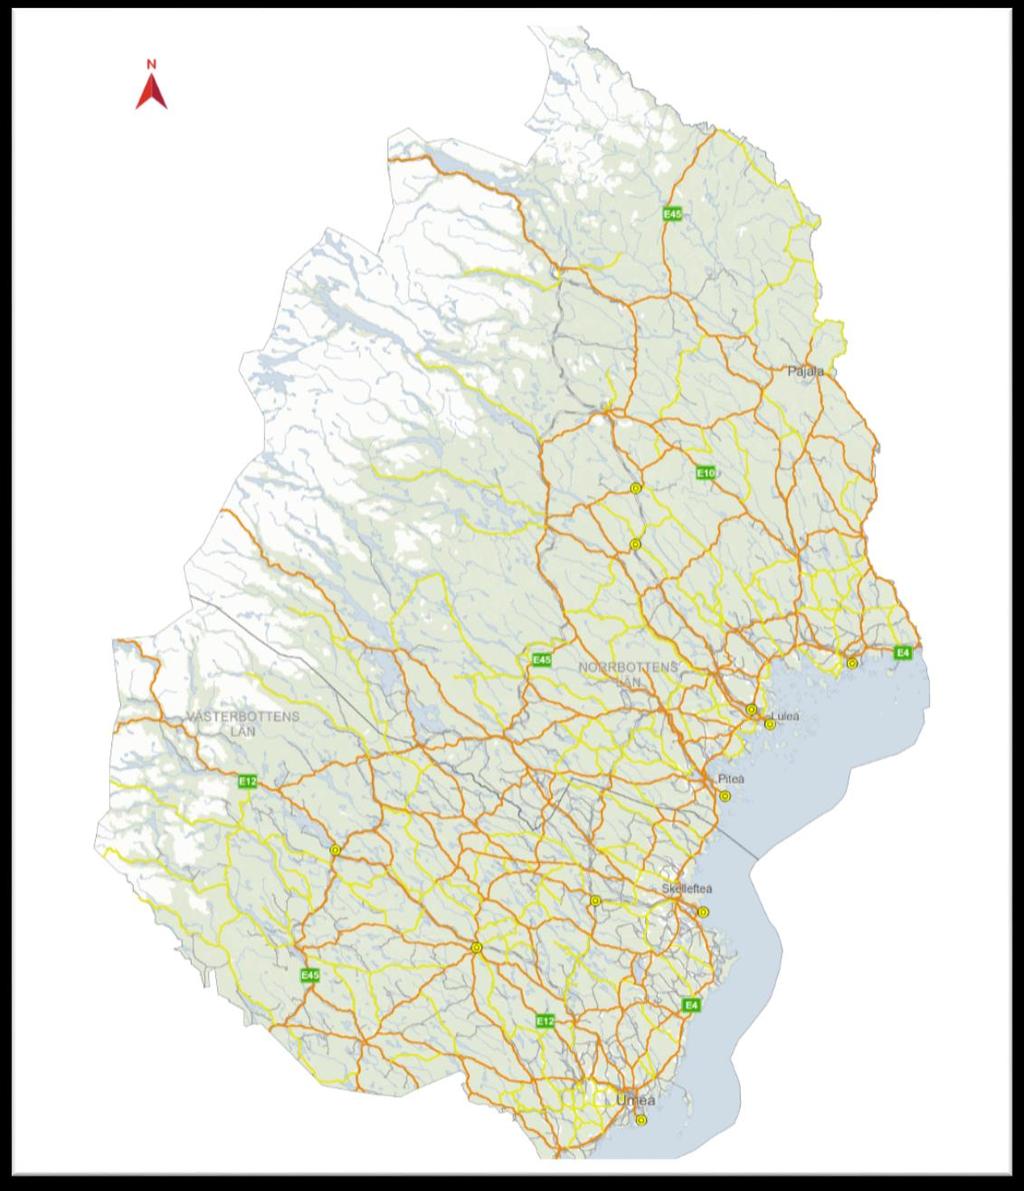 Figur 1. Utpekat strategiskt vägnät, gult och brandgult, i Region Nord uppdelat i två nivåer baserat på hur de framtida behoven av tyngre transporter.